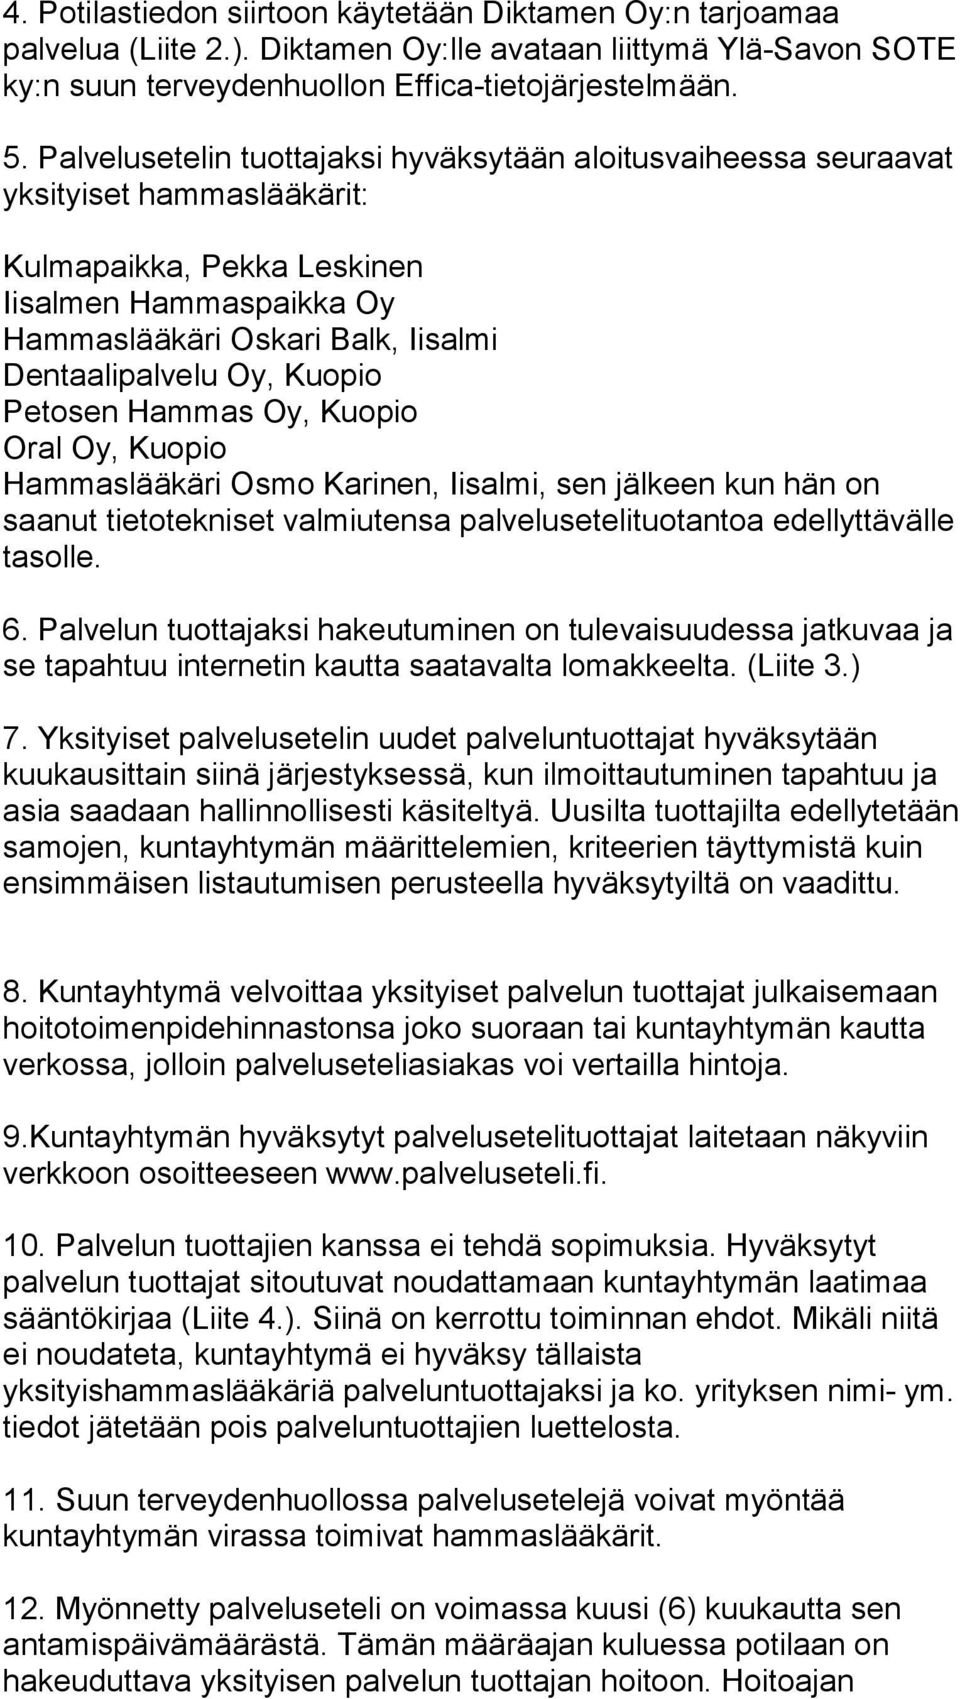 Oy, Kuopio Petosen Hammas Oy, Kuopio Oral Oy, Kuopio Hammaslääkäri Osmo Karinen, Iisalmi, sen jälkeen kun hän on saanut tietotekniset valmiutensa palvelusetelituotantoa edellyttävälle tasolle. 6.